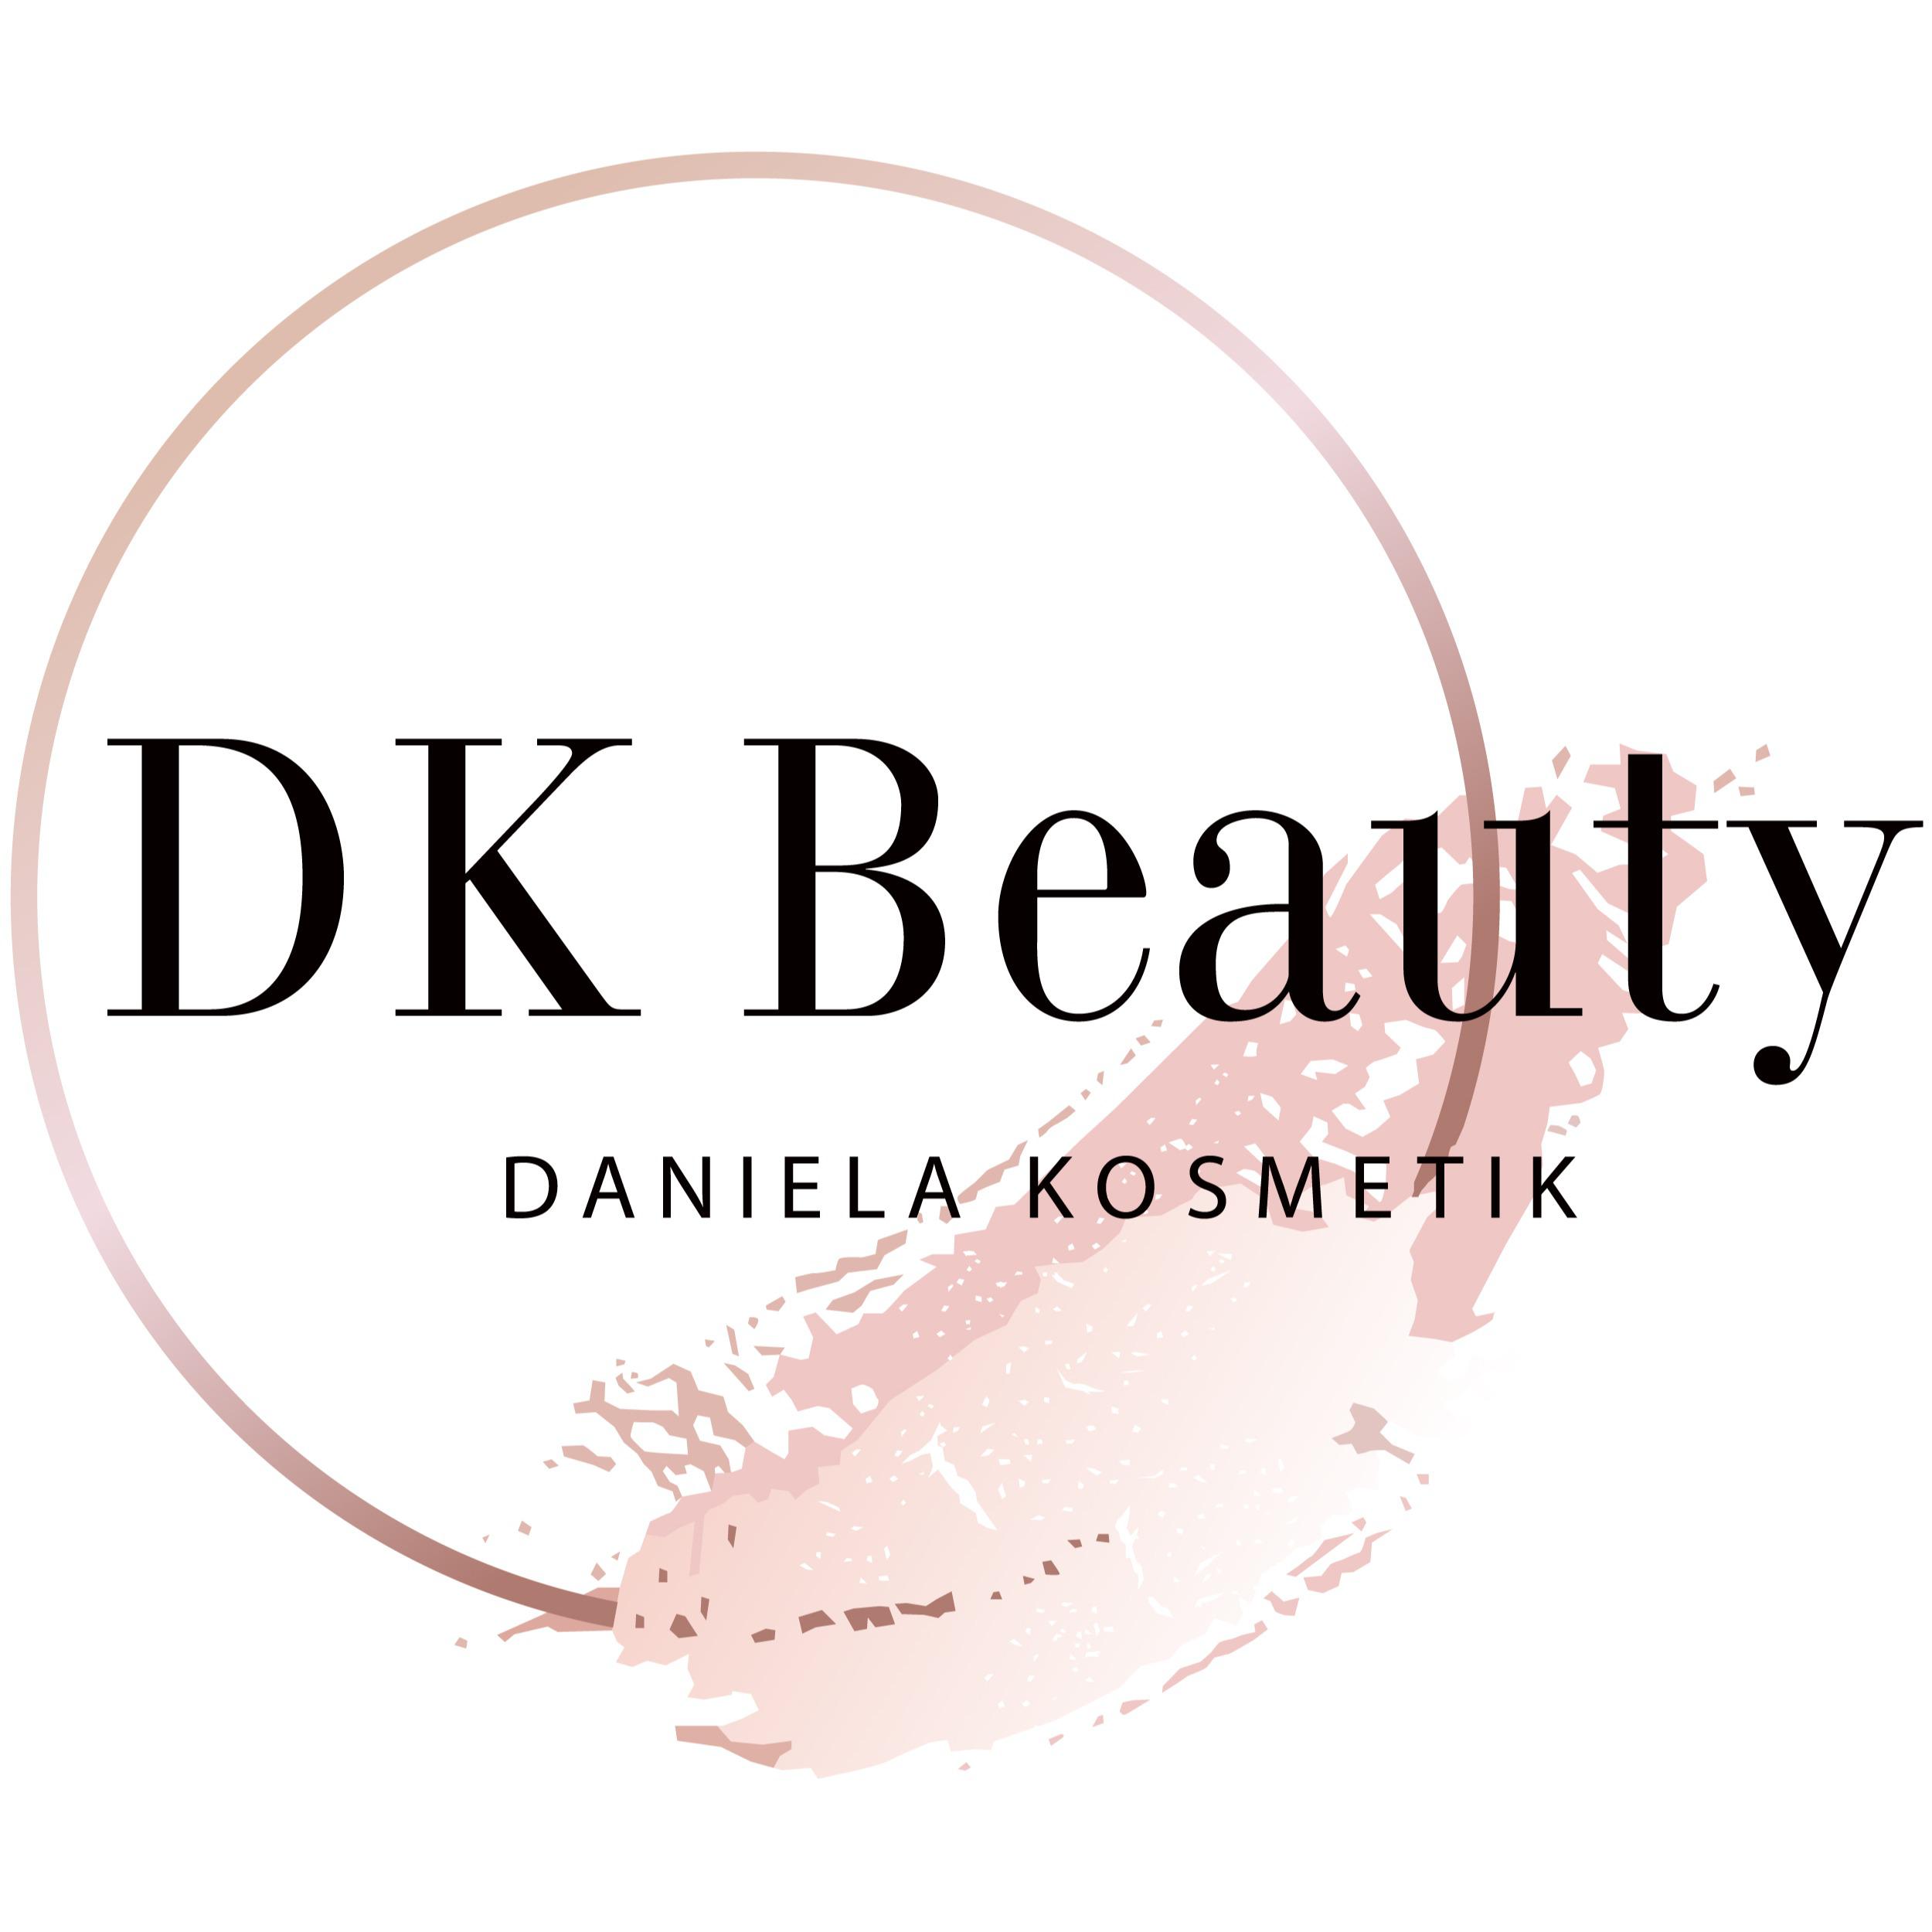 DK Beauty  